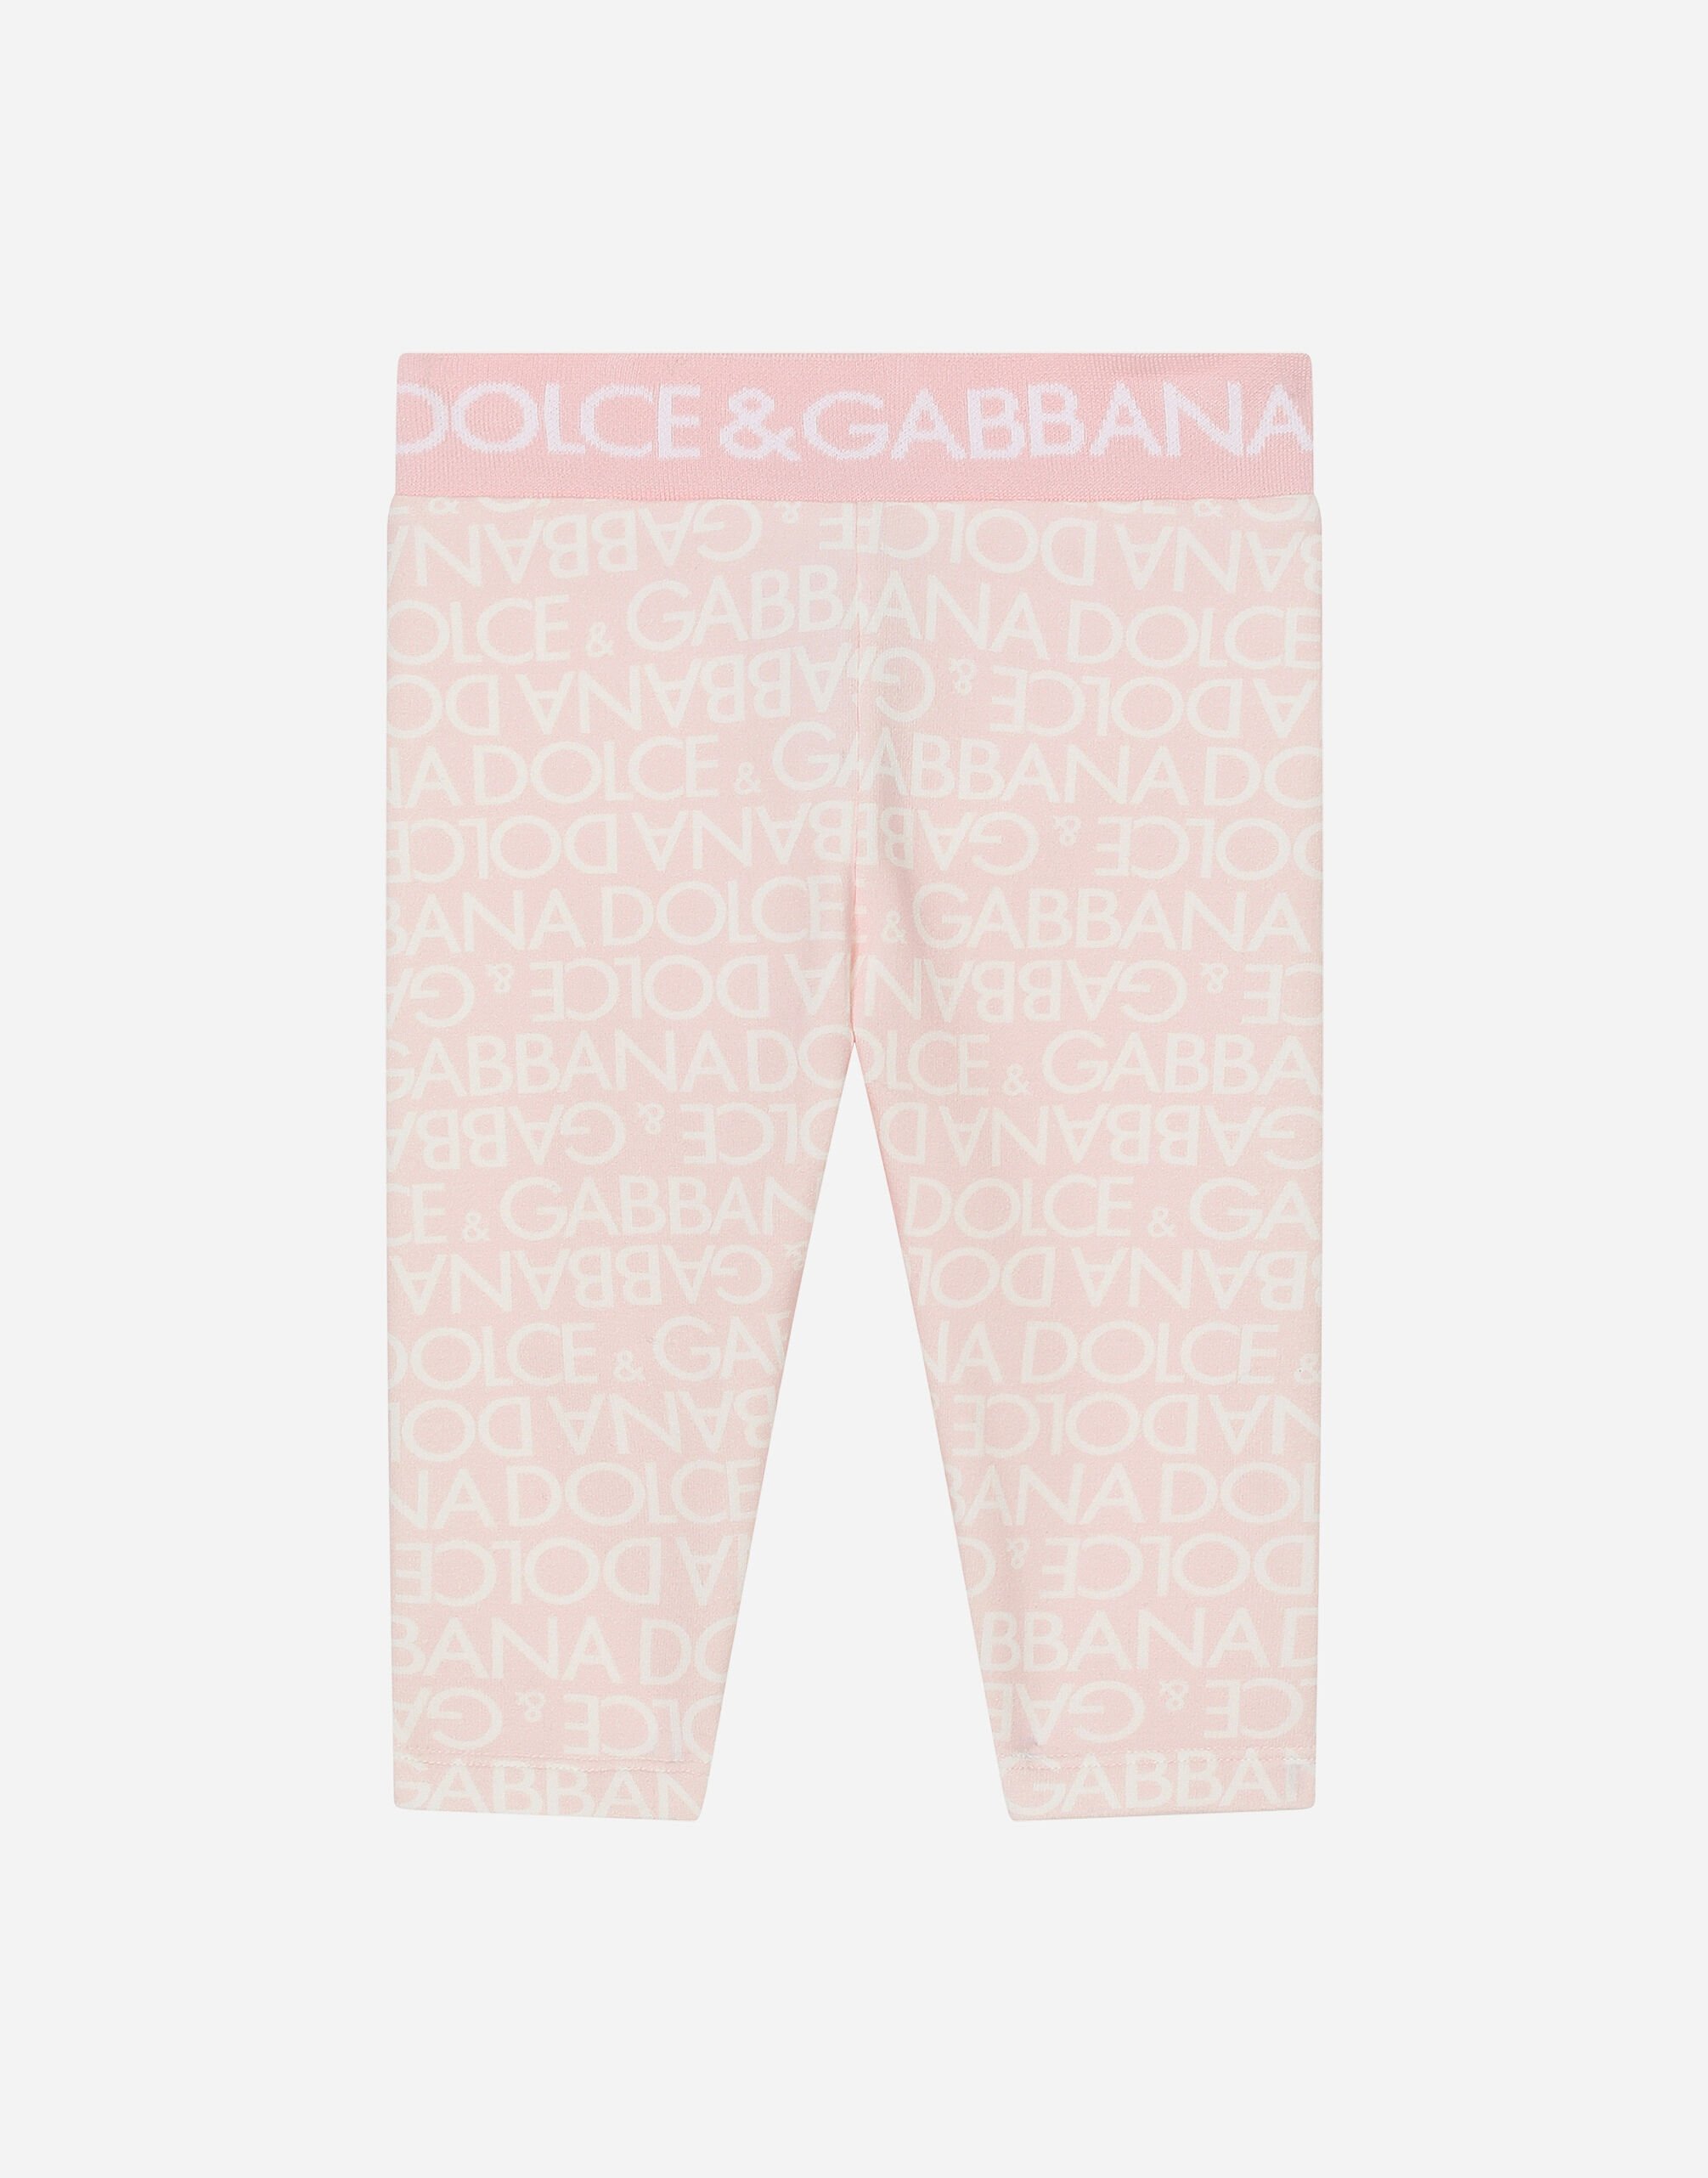 Dolce & Gabbana Leggings in interlock stampa Logomania Stampa L23DI5HS5Q9